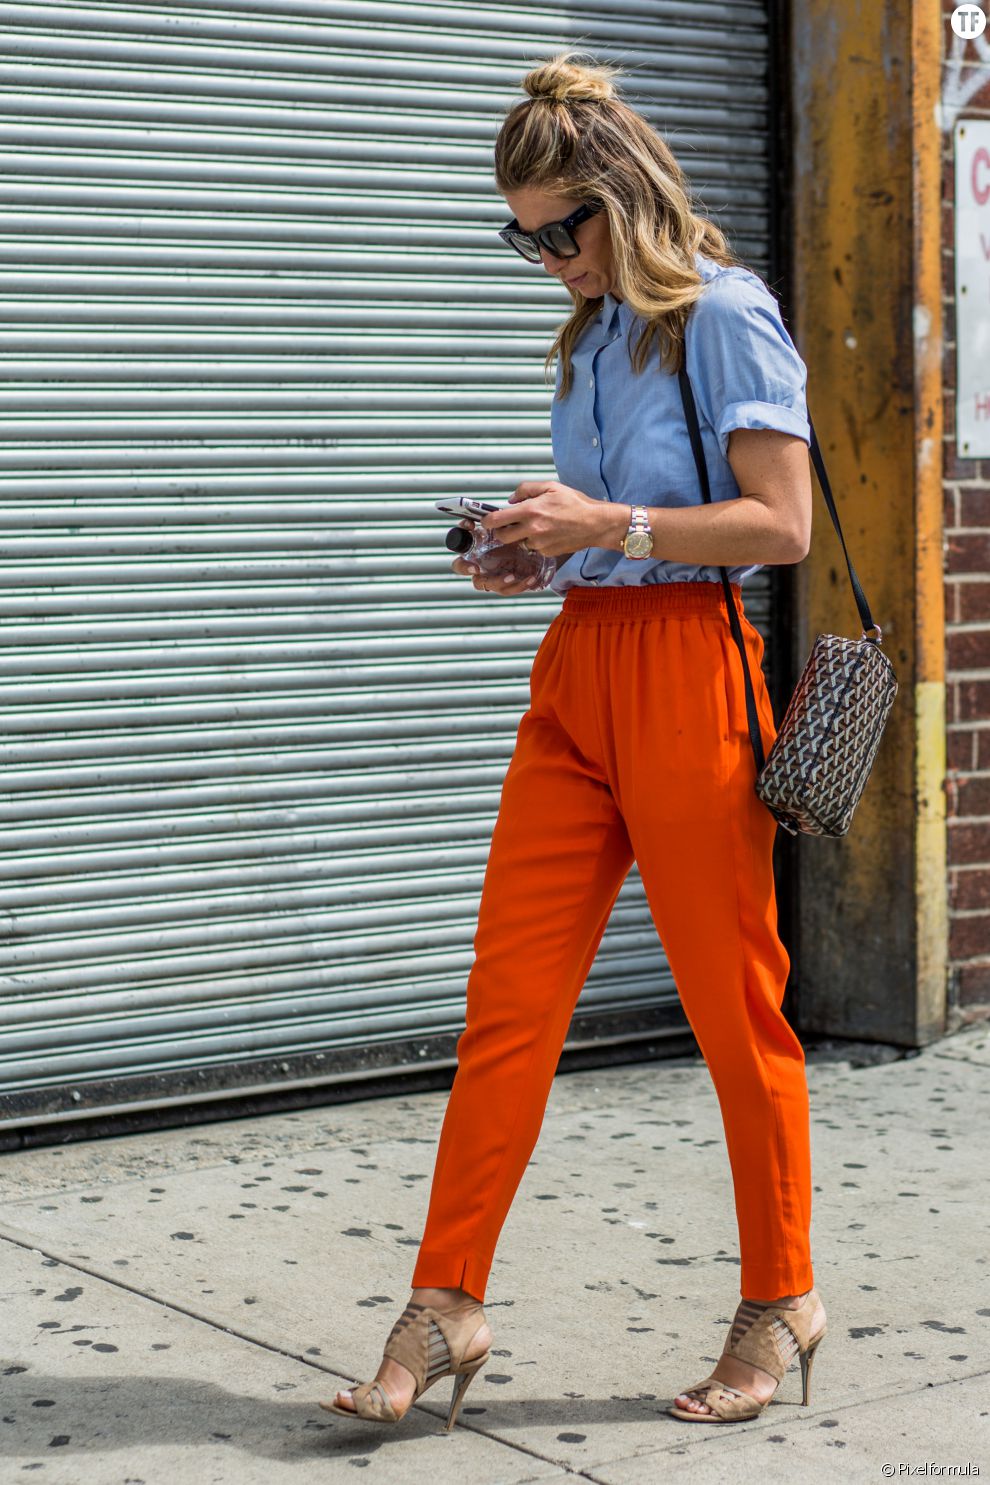  On adore ce pantalon taille haute orange aussi vibrant que bien porté.  